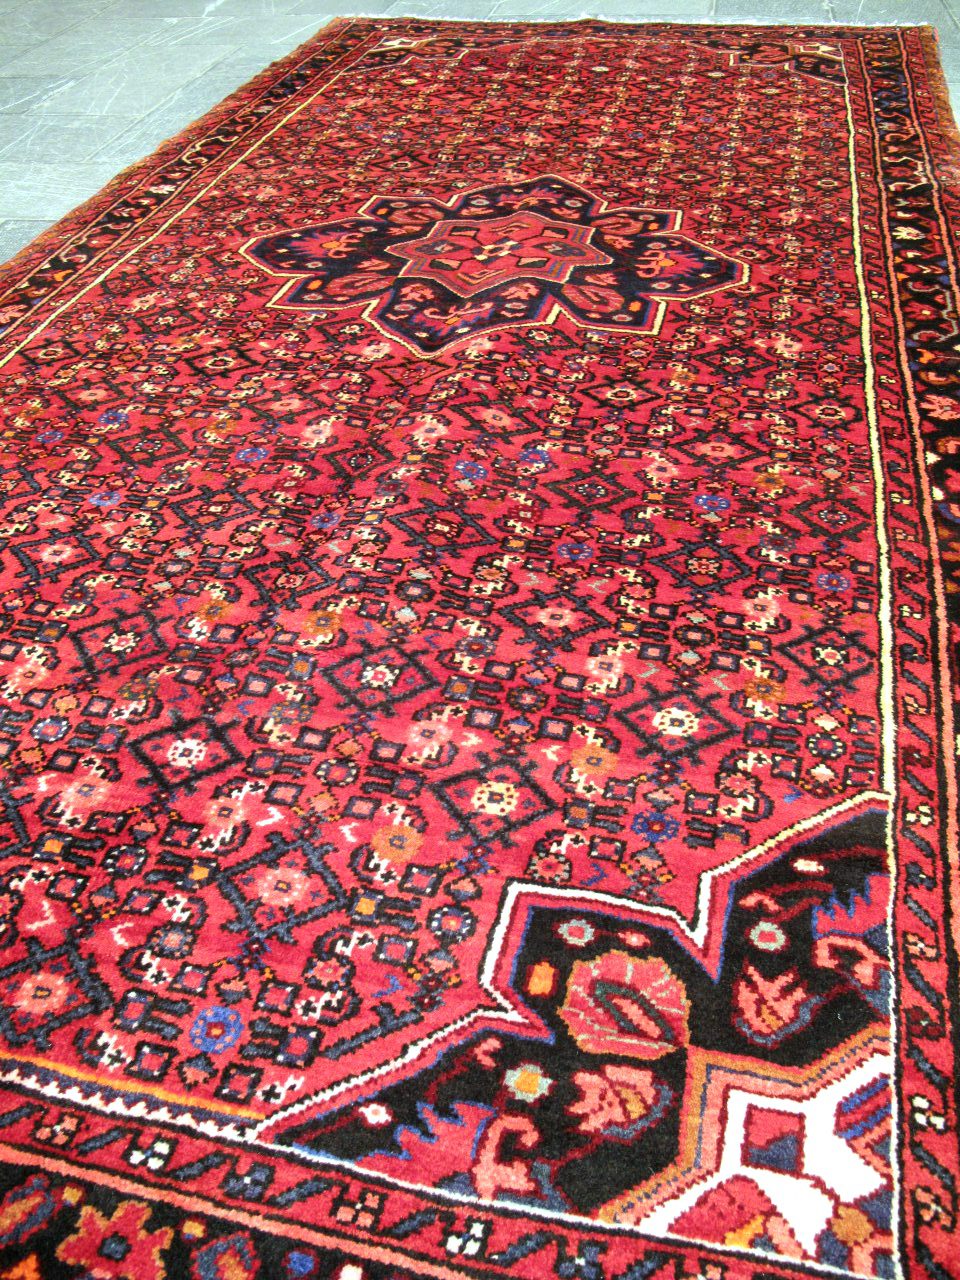 فرش دستباف حسين آباد همدان طرح لچک و ترنج سایز ميانه ۳٫۰۵×۱٫۵۵ رنگ متن لاكي رنگ حاشیه سرمه اي کد ۴۲۰۱۴